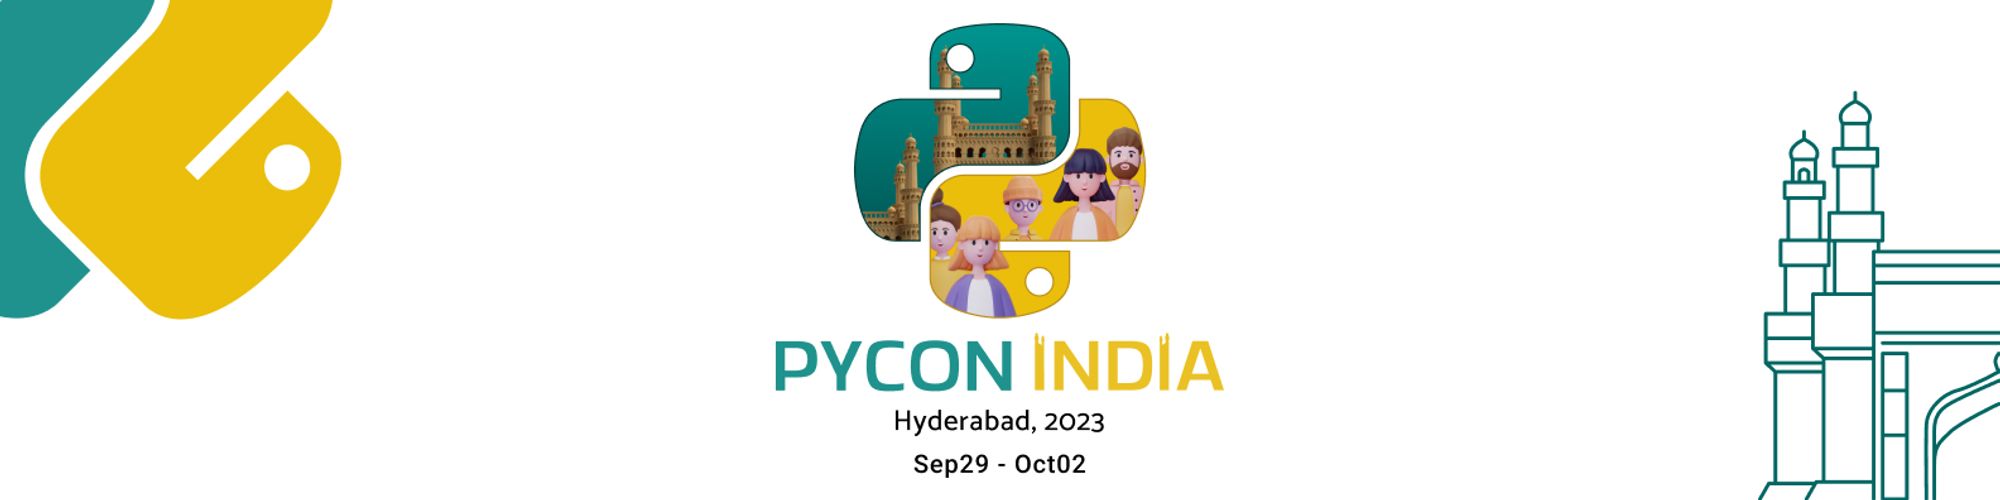 PyCon India